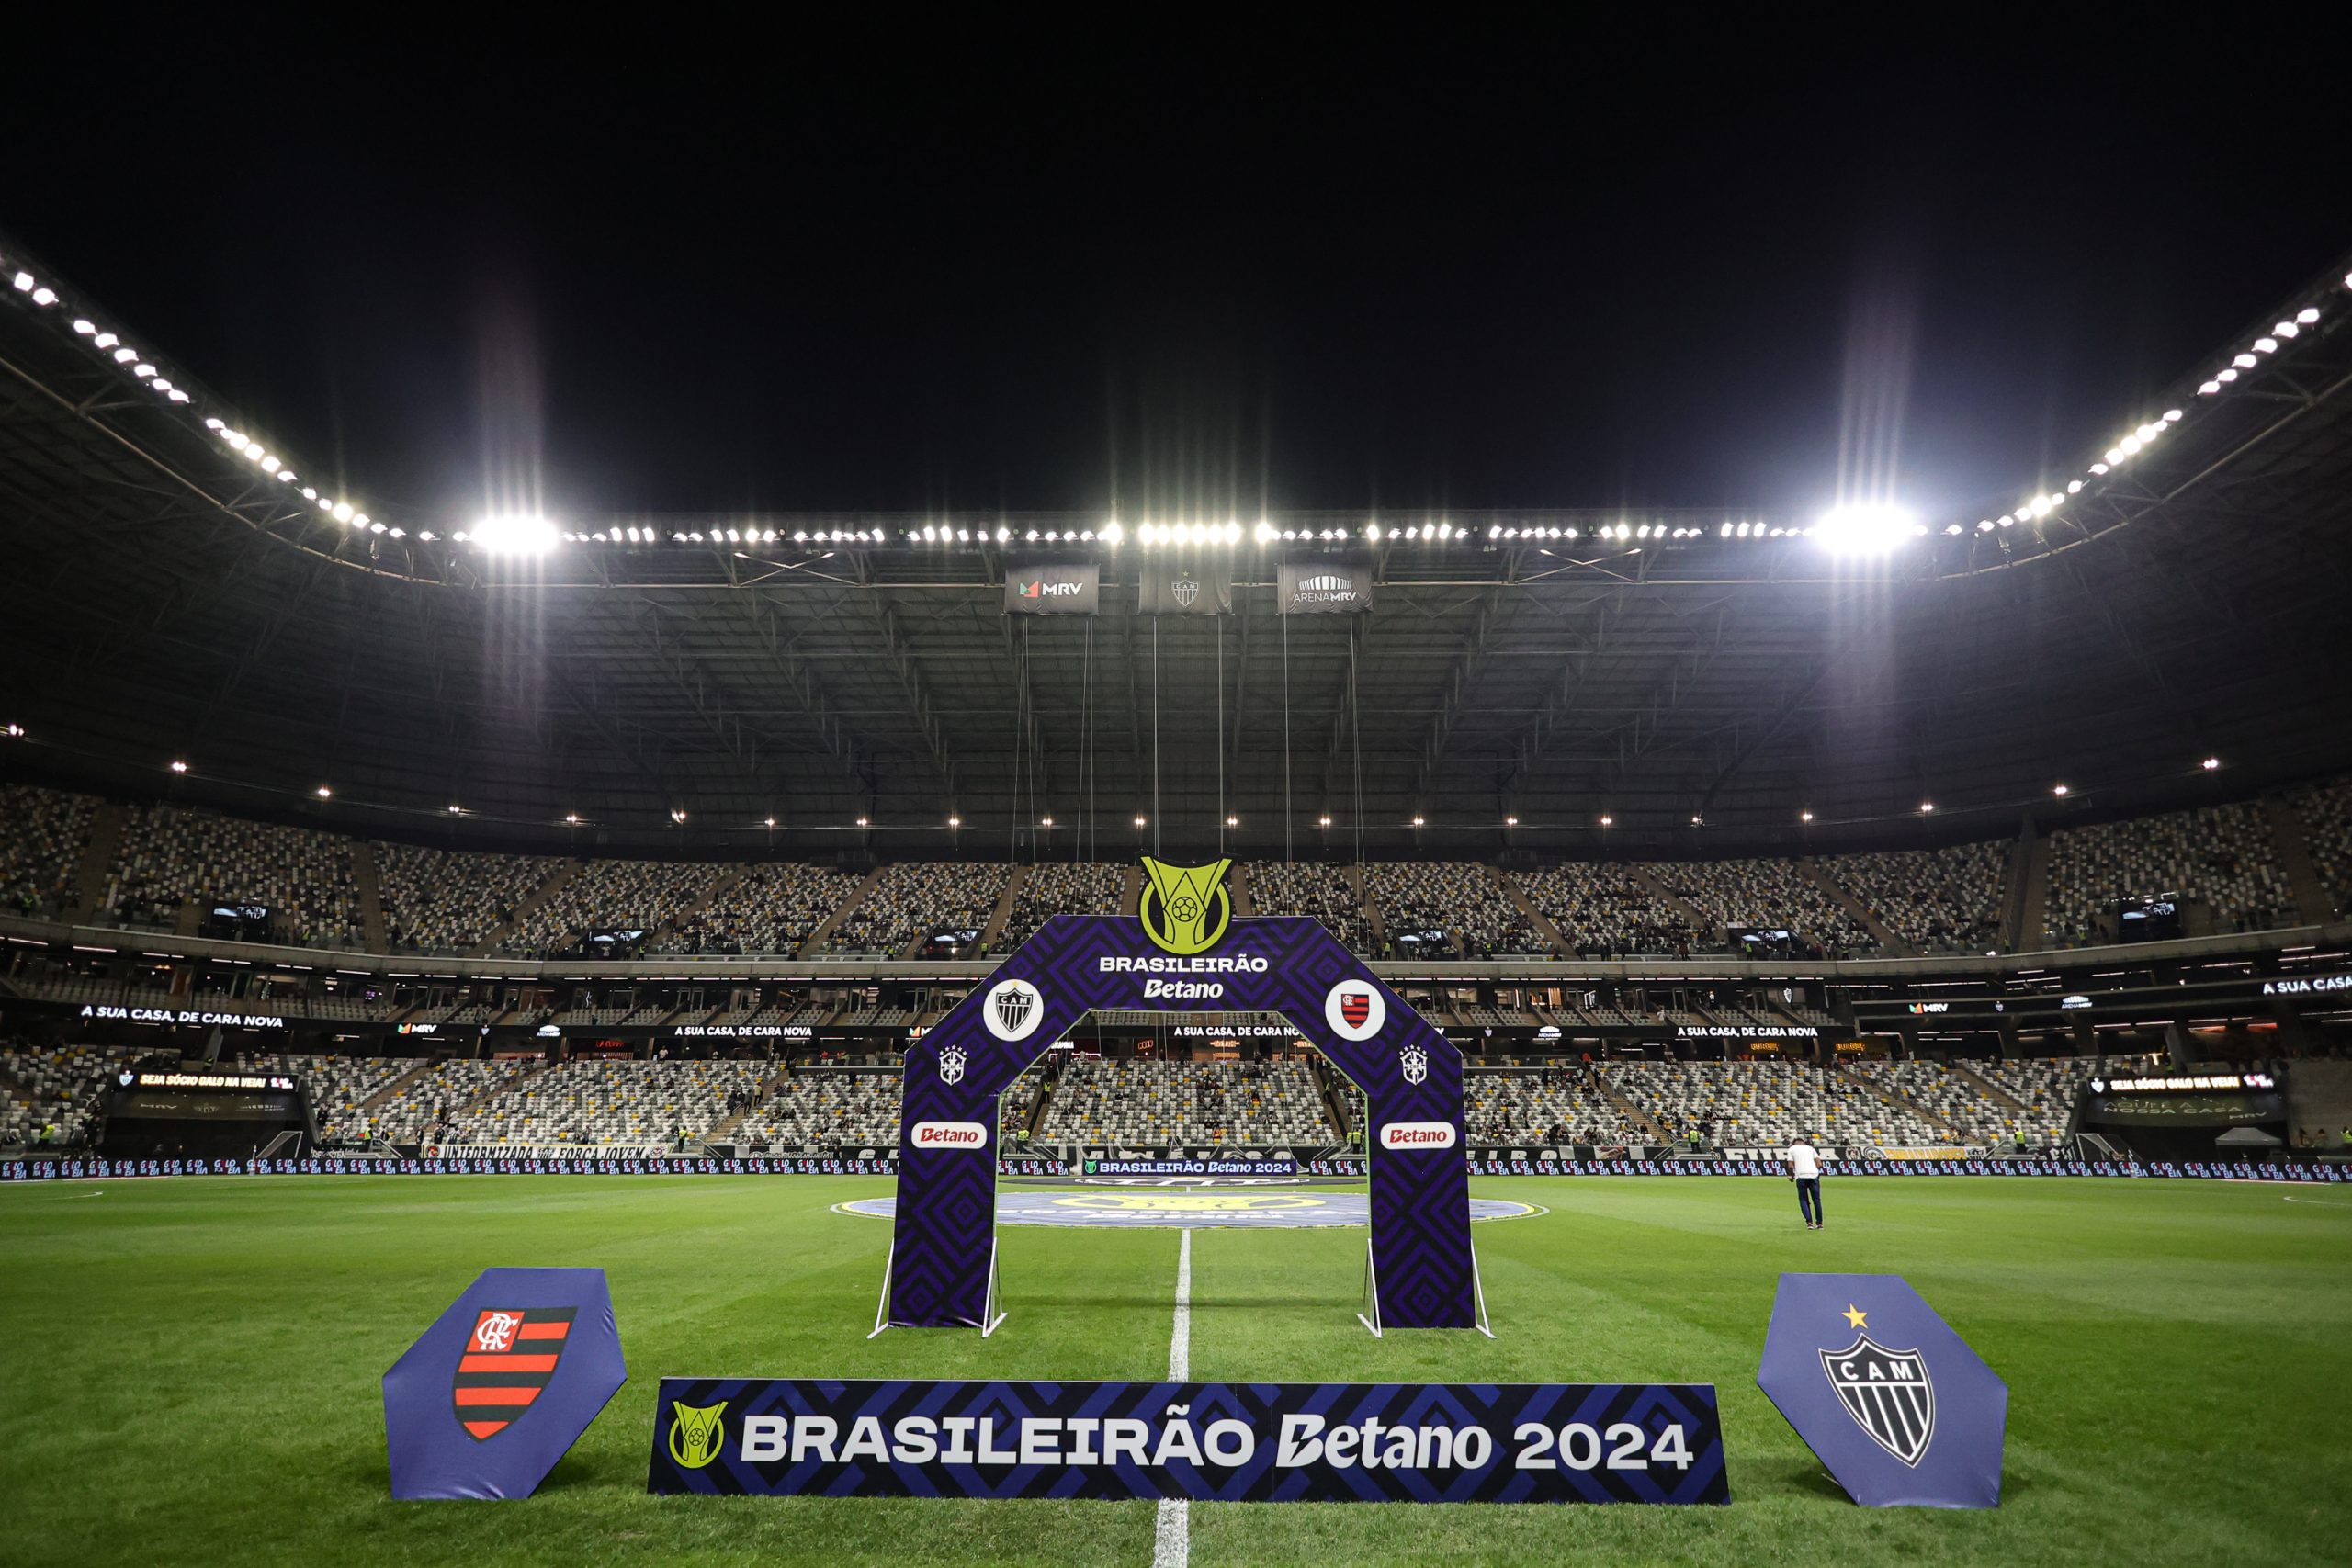 Arena MRV preparada para o duelo de logo mais entre Atlético-MG x Flamengo. Foto: Gilson Lobo/AGIF